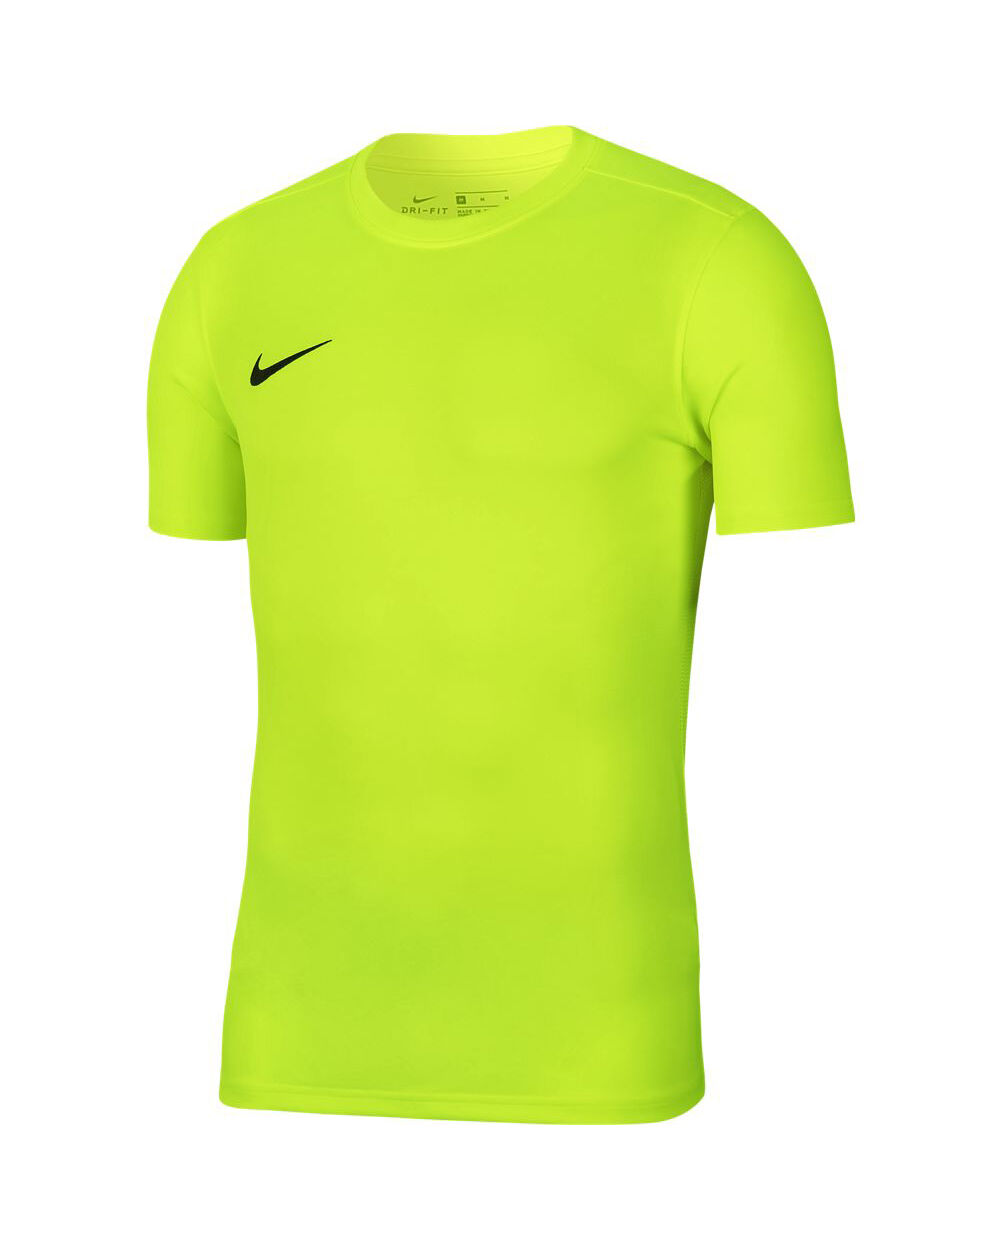 Nike Maglia Park VII Giallo Fluorescente per Bambino BV6741-702 S